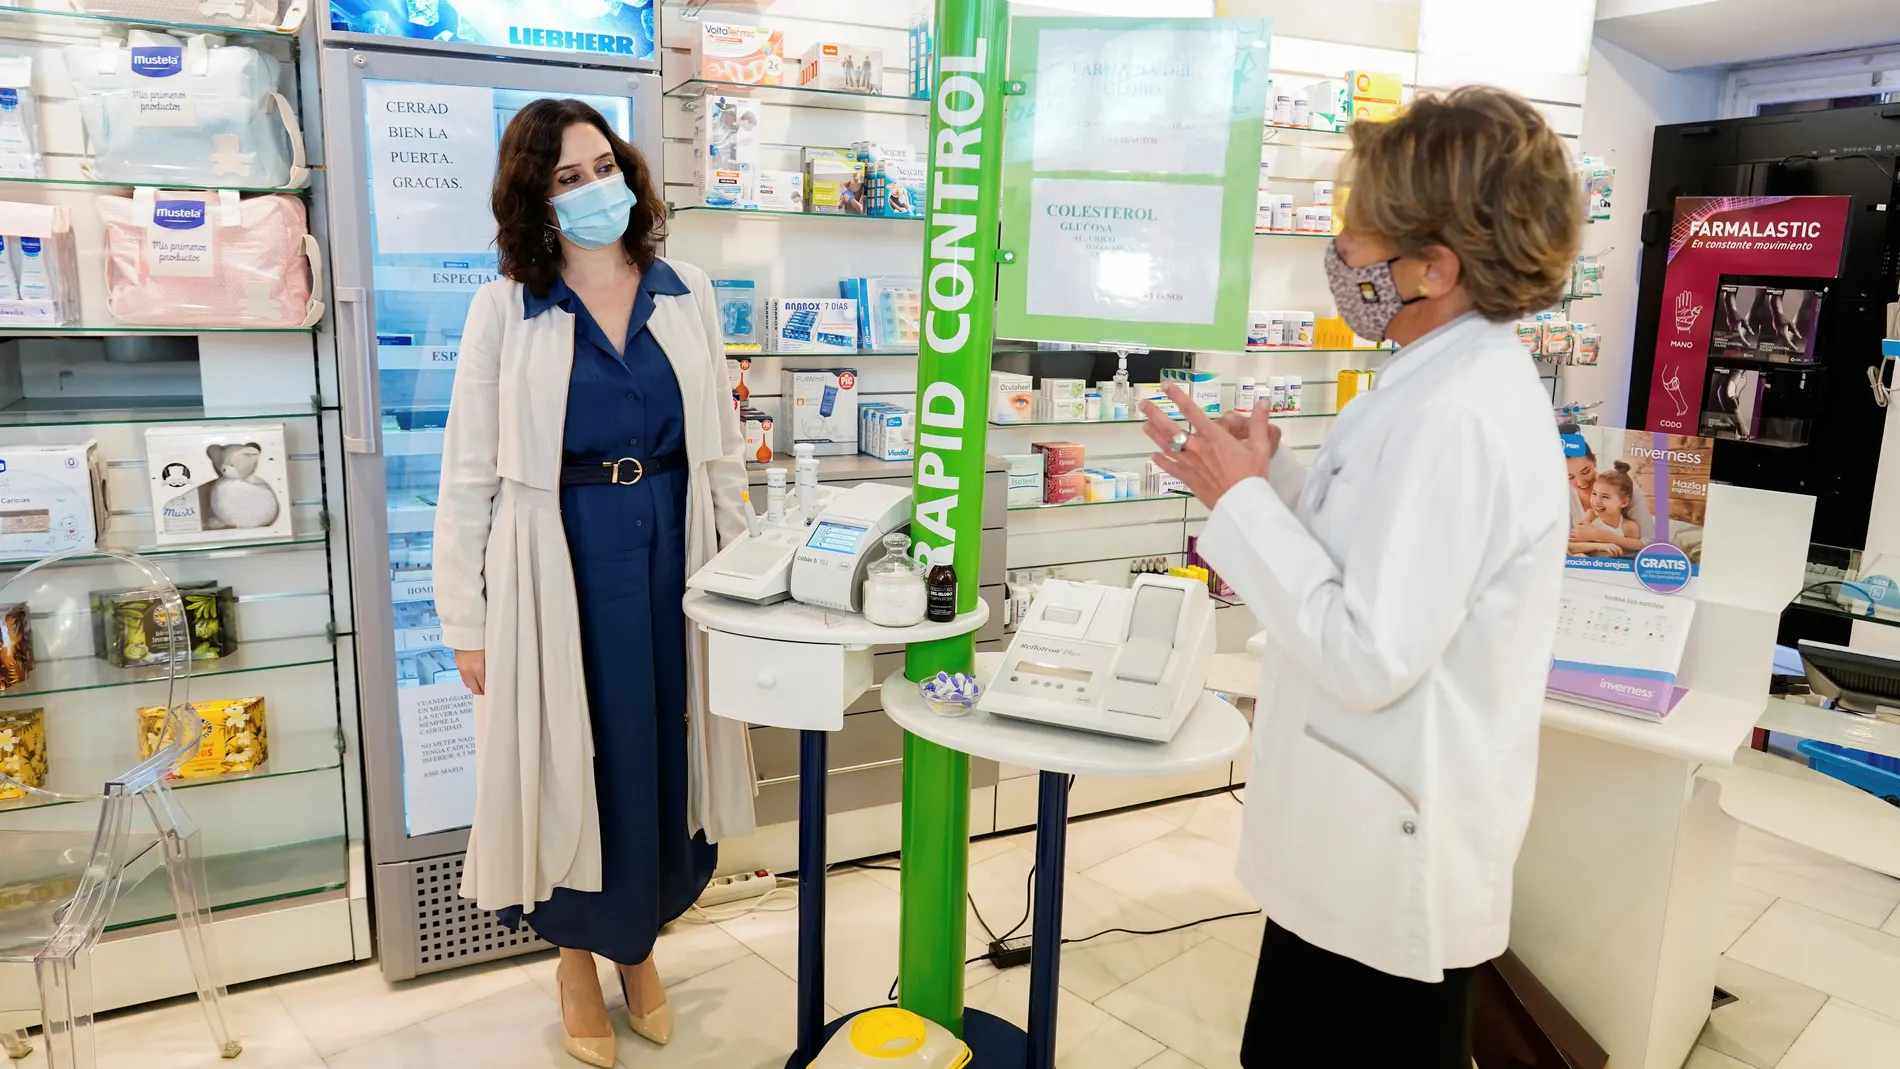 La presidenta de la Comunidad de Madrid, Isabel Díaz Ayuso en su visita a una farmacia del centro de Madrid.